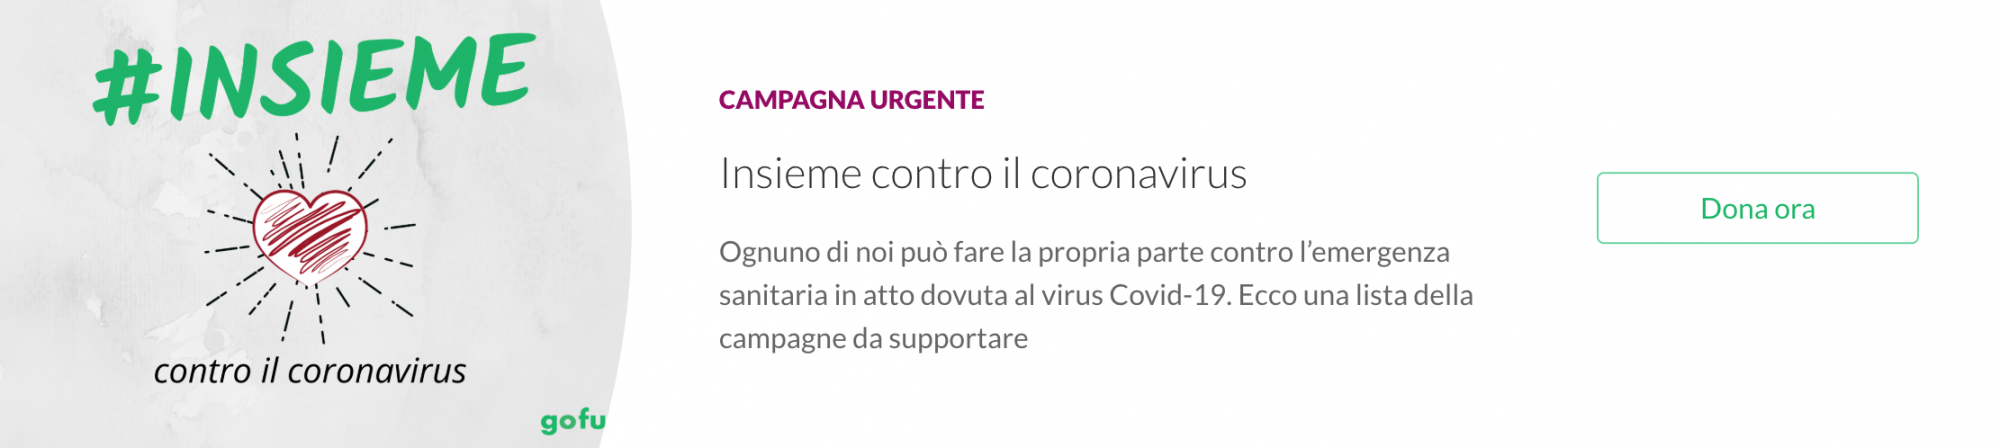 Coronavirus: il ruolo del crowdfunding